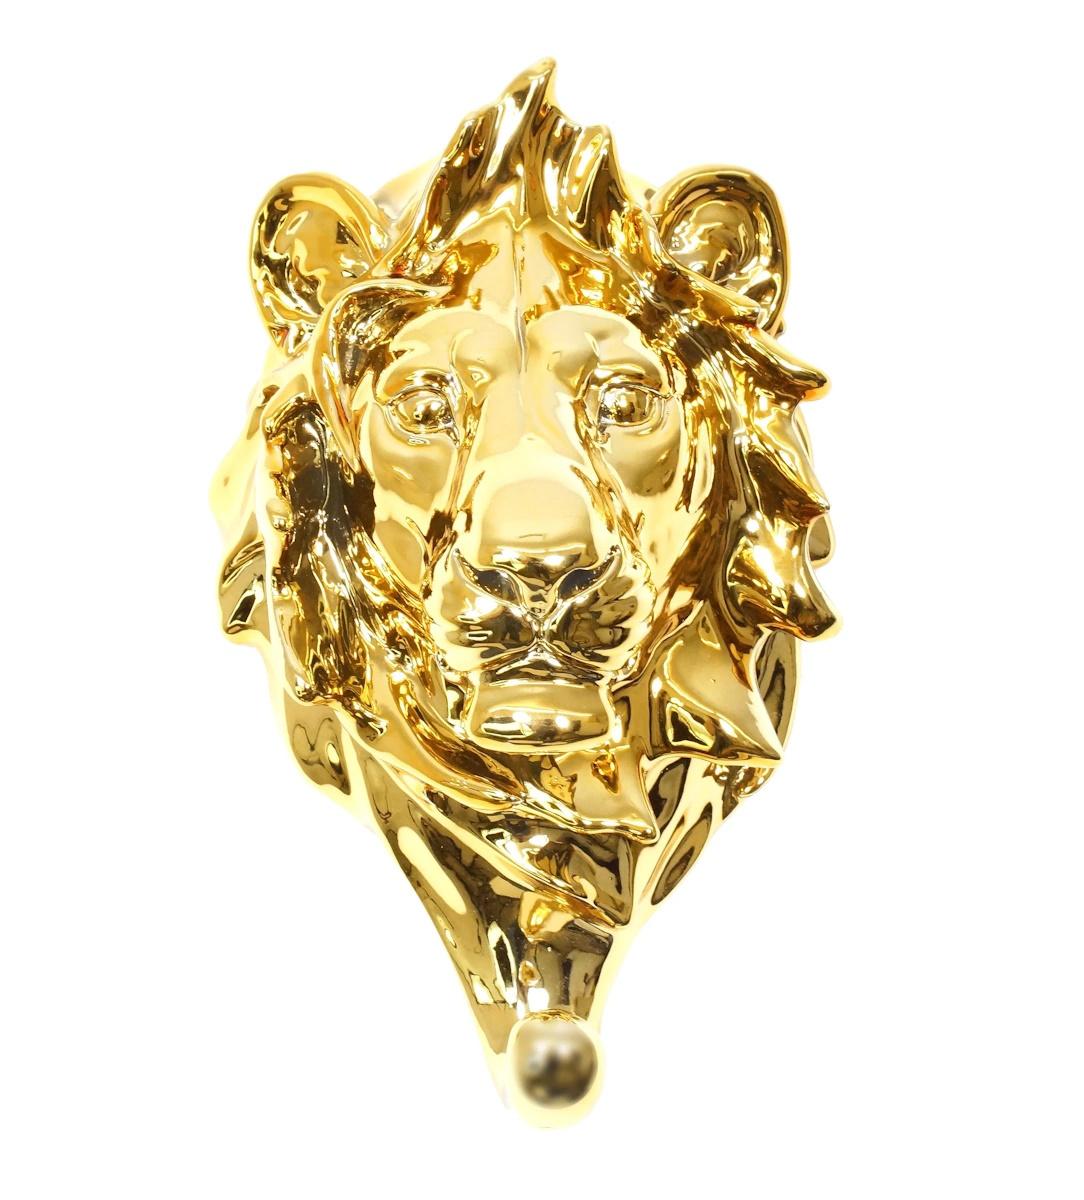 Vergoldete Bronzeskulptur, Serviettenhalter mit dem Kopf eines Löwen, 20. Jahrhundert.

Vergoldete Bronzeskulptur, Serviettenhalter mit dem Kopf eines Löwen, 20. Jahrhundert.  

H: 21cm, B: 12cm, T: 10cm